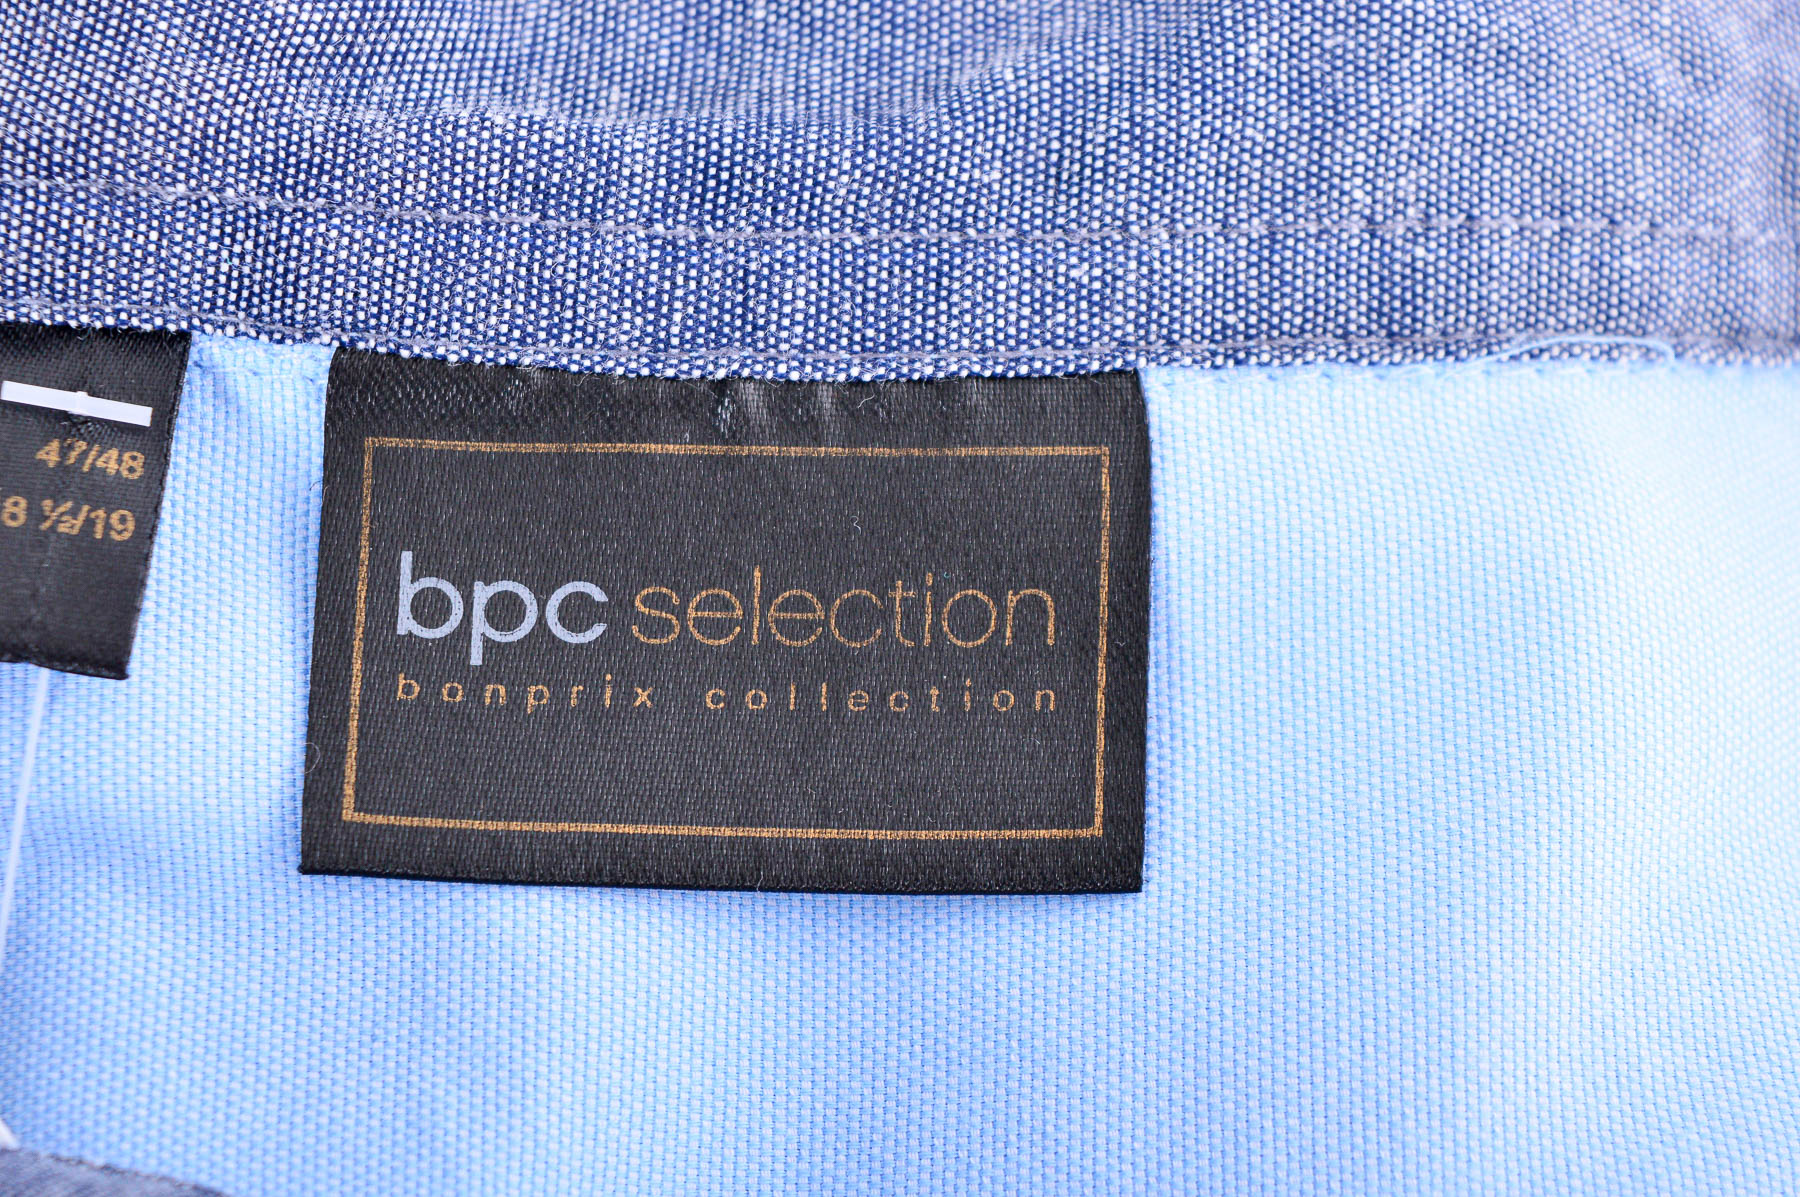 Мъжка риза - Bpc selection bonprix collection - 2